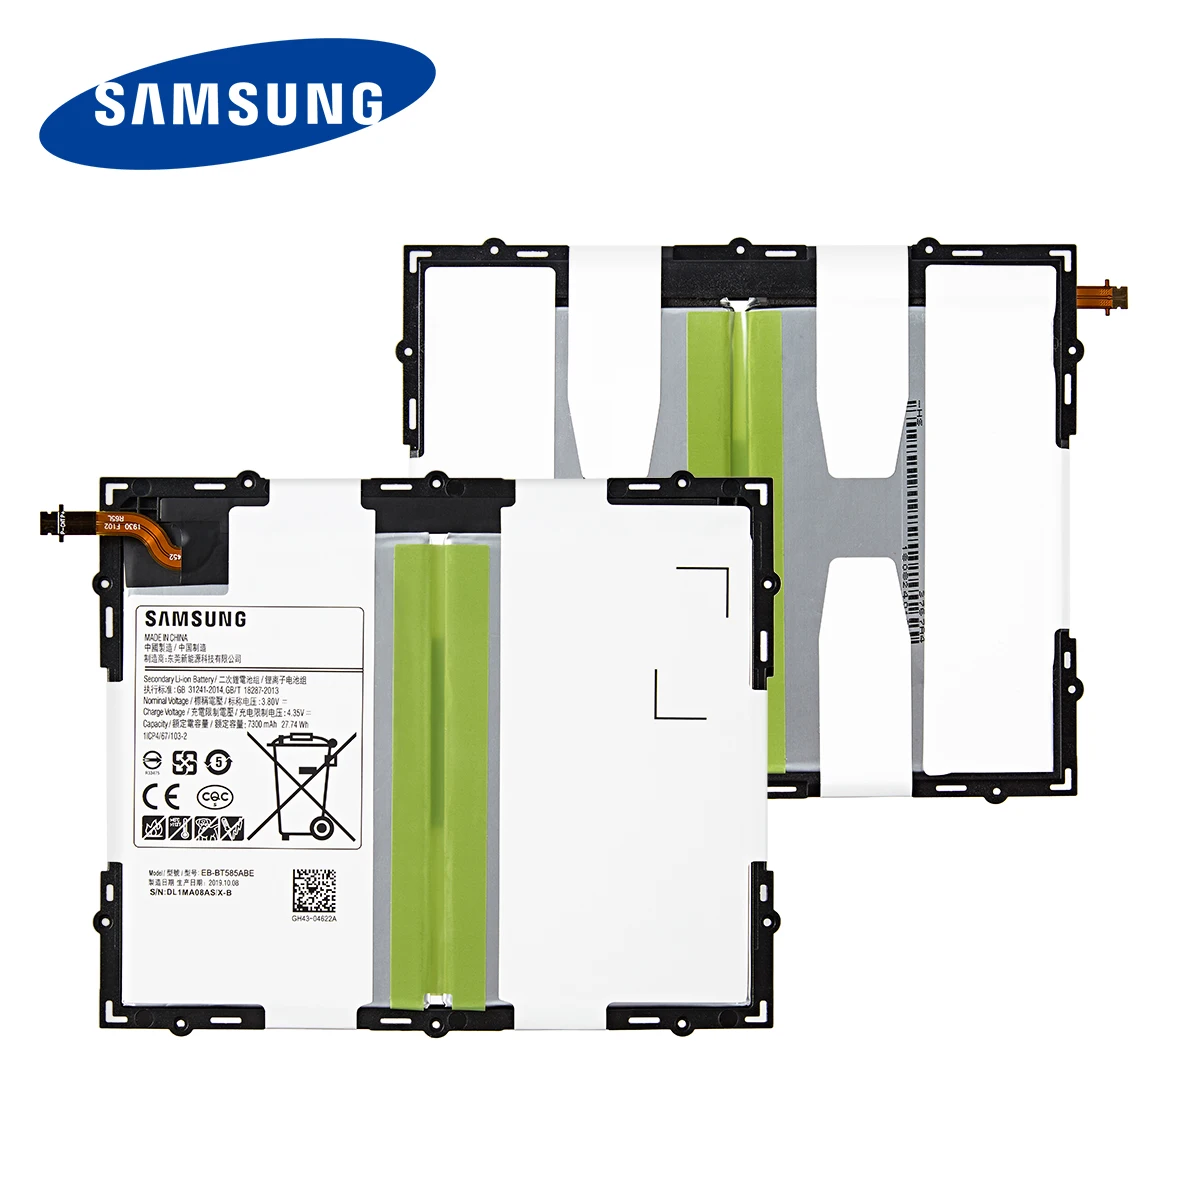 Originalni SAMSUNG Tablični EB-BT585ABE 7300mAh Baterija Za Samsung Tablični računalnik Galaxy Tab 10.1 2016 T580 SM-T585C T585 T580N Baterije